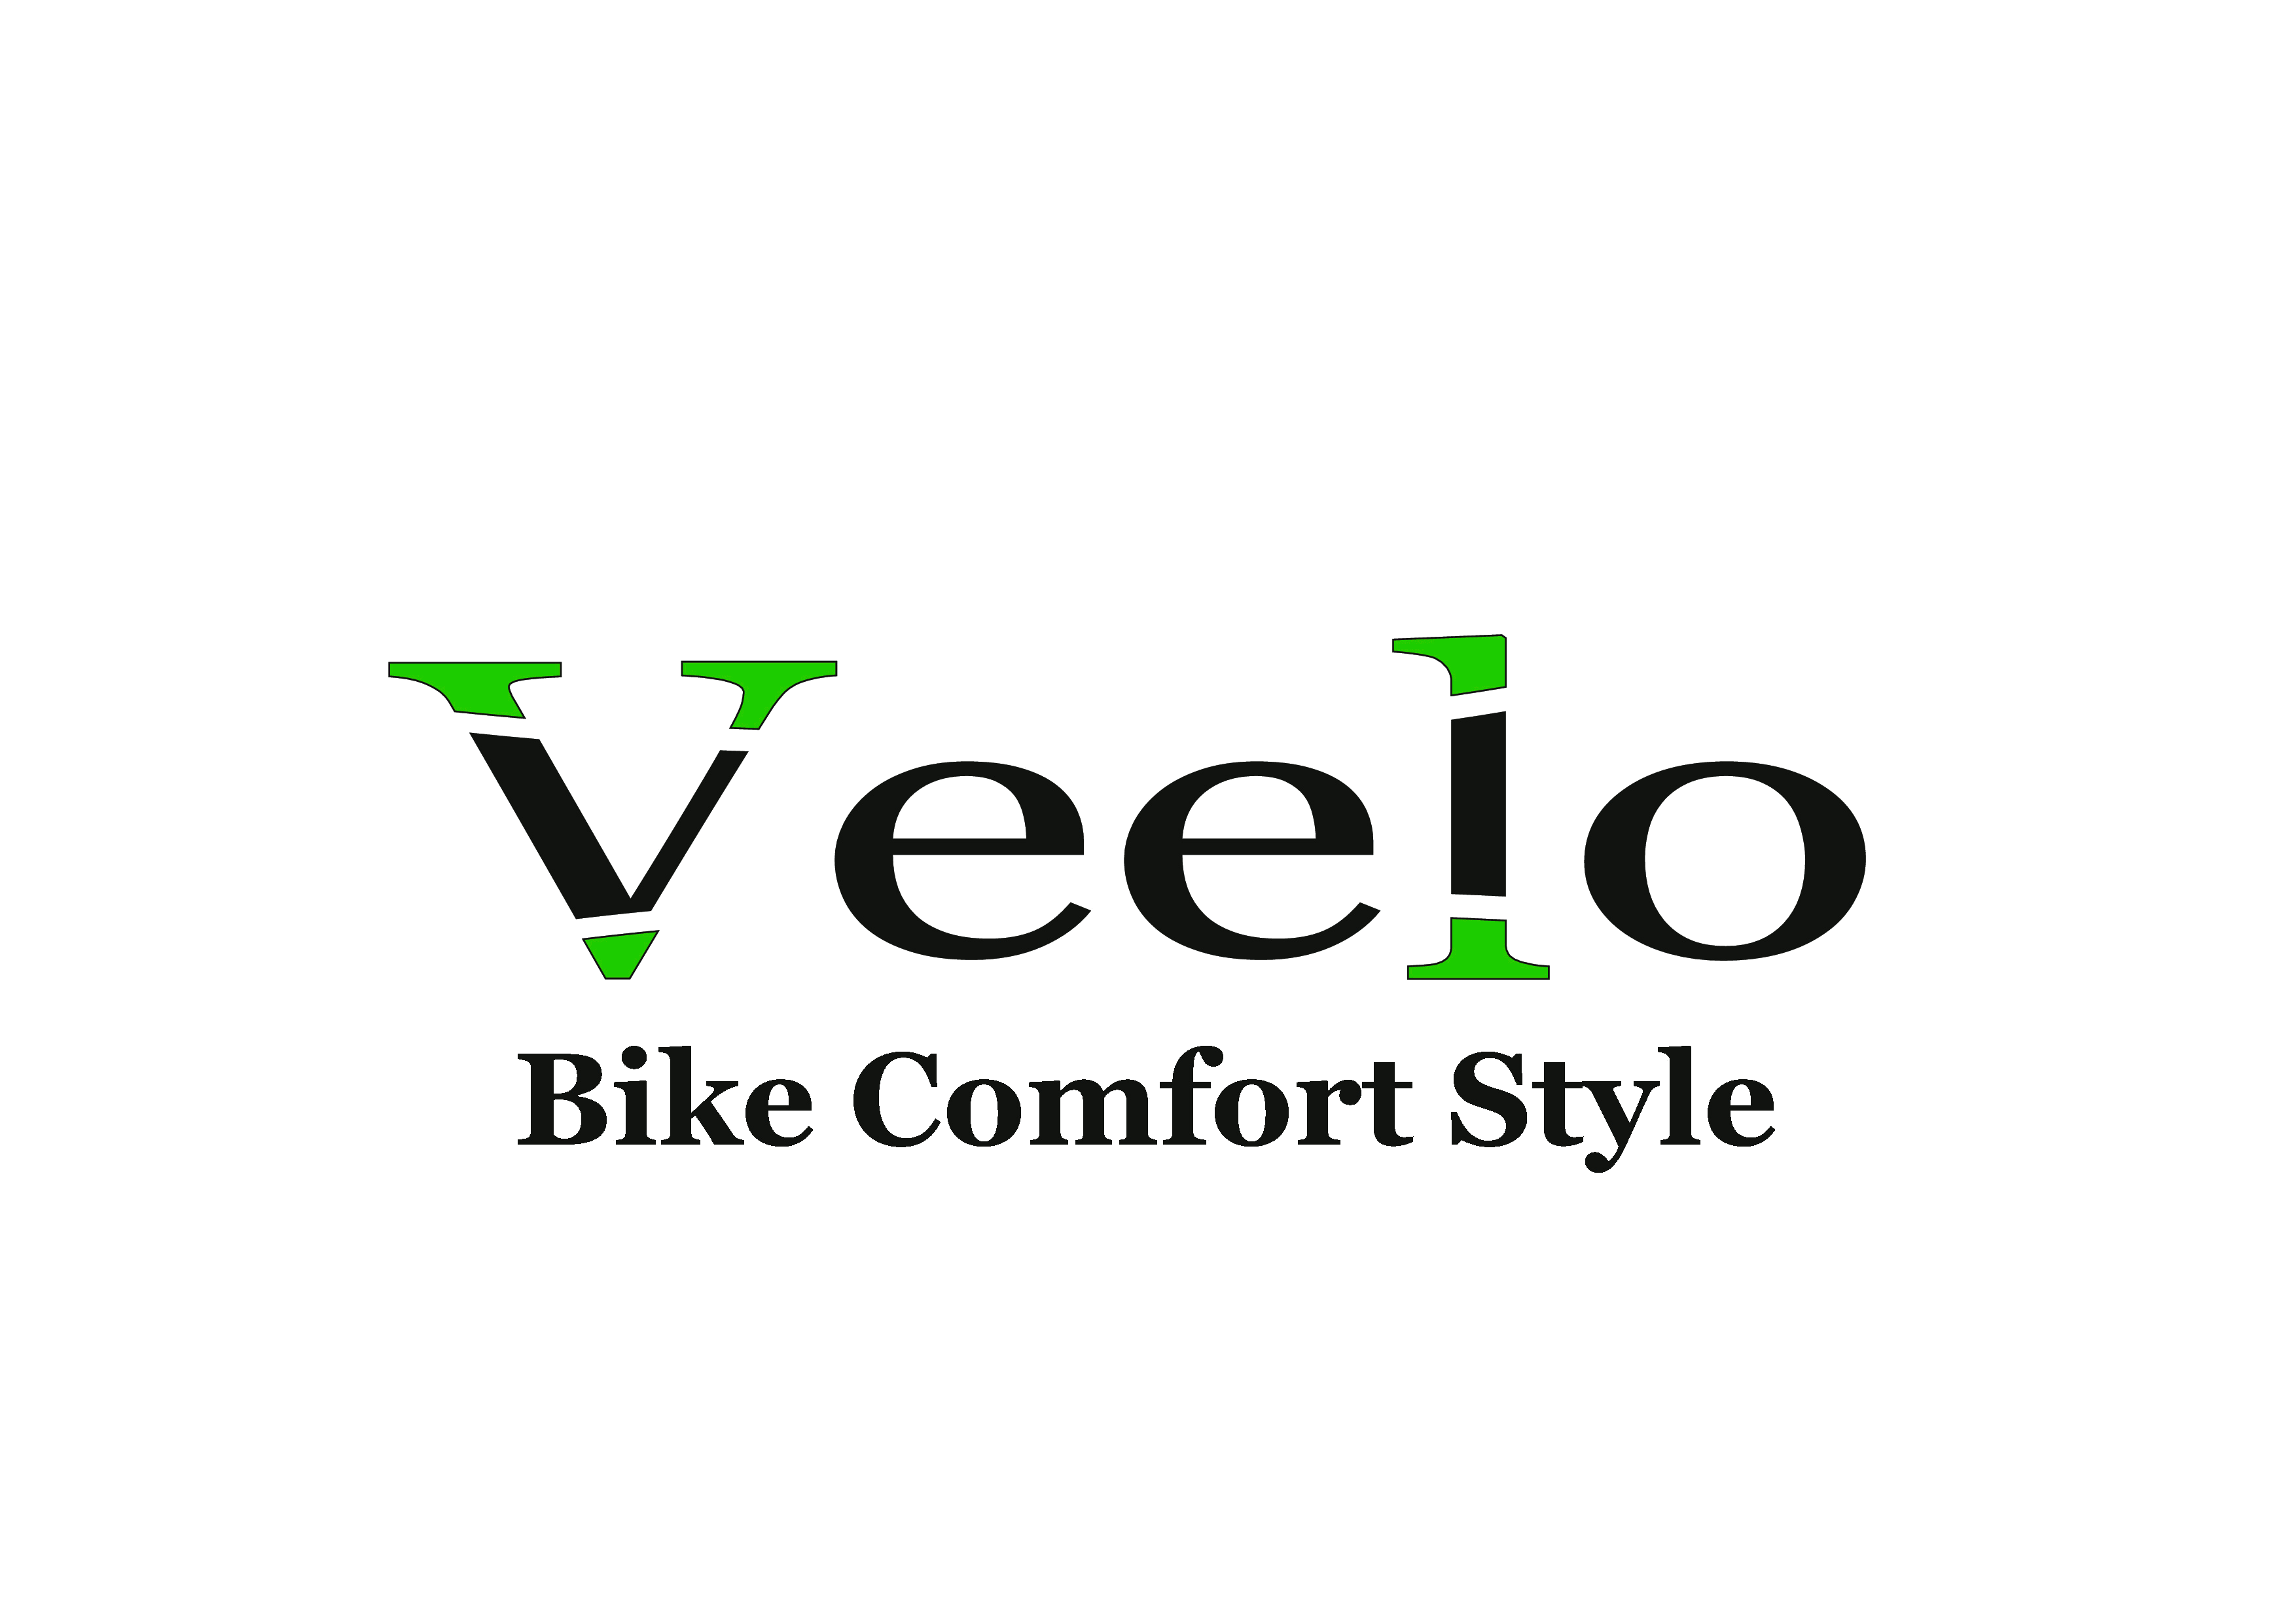 Veelo Bike Comfort Style